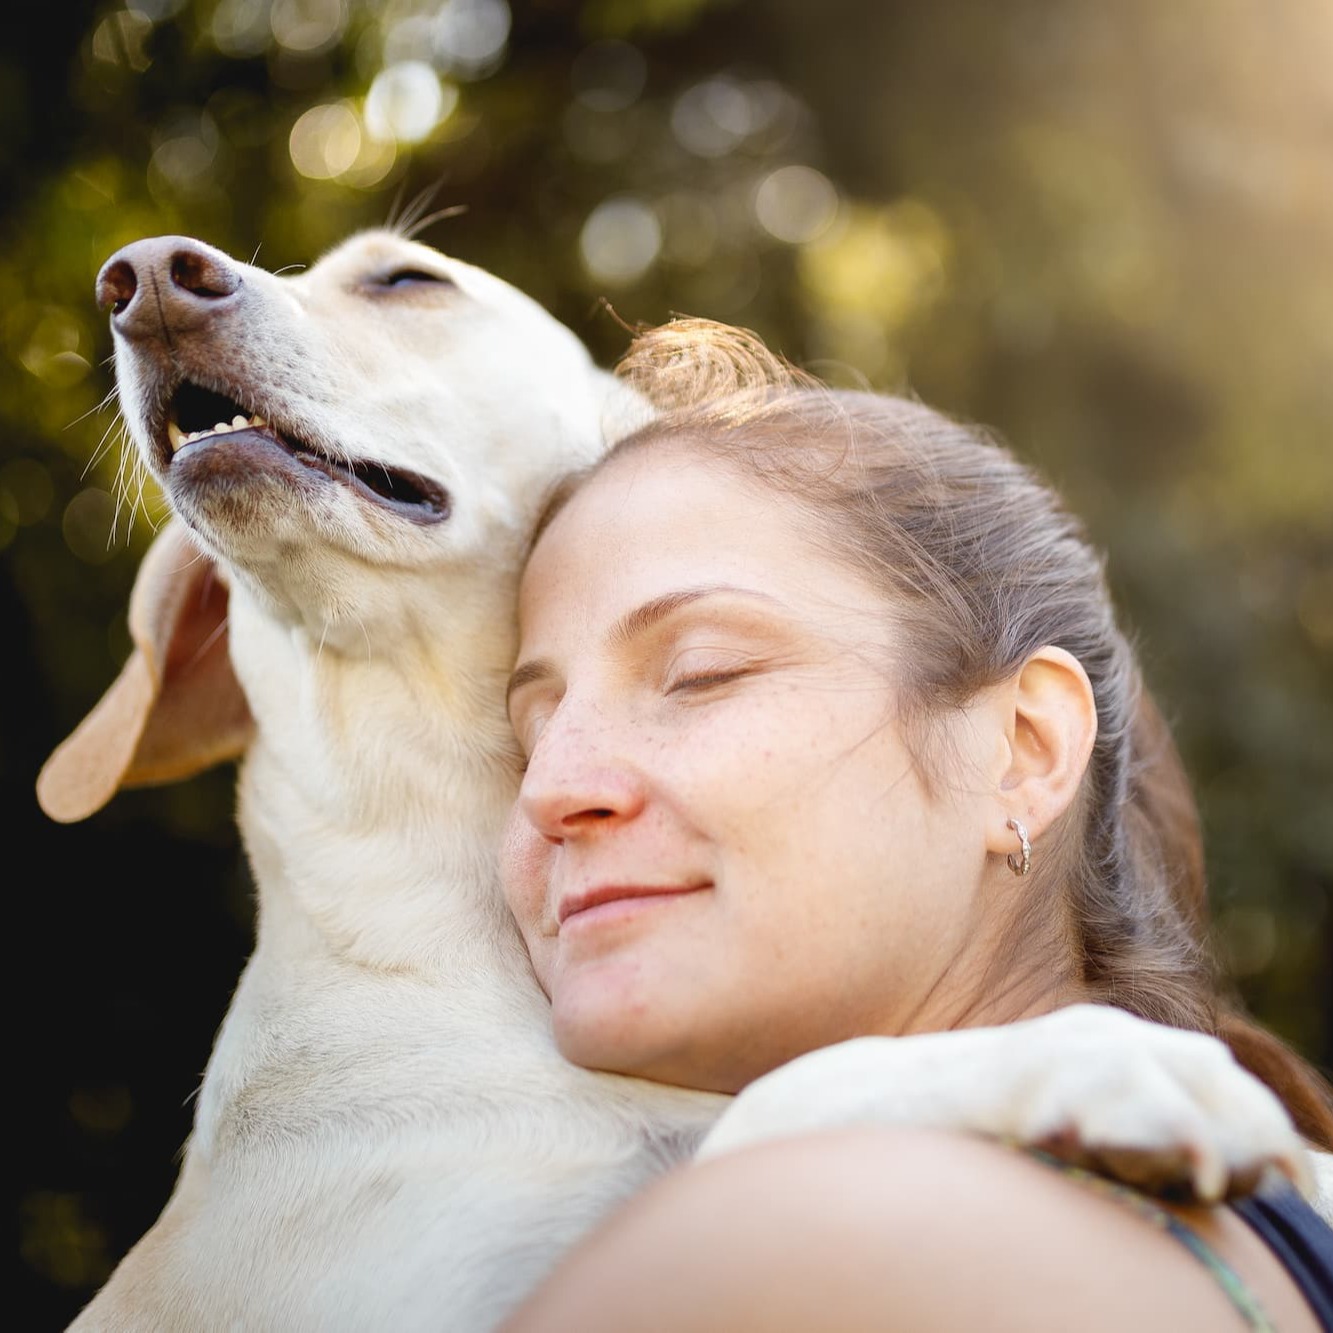 Blije hond knuffelt baasje – Aveve